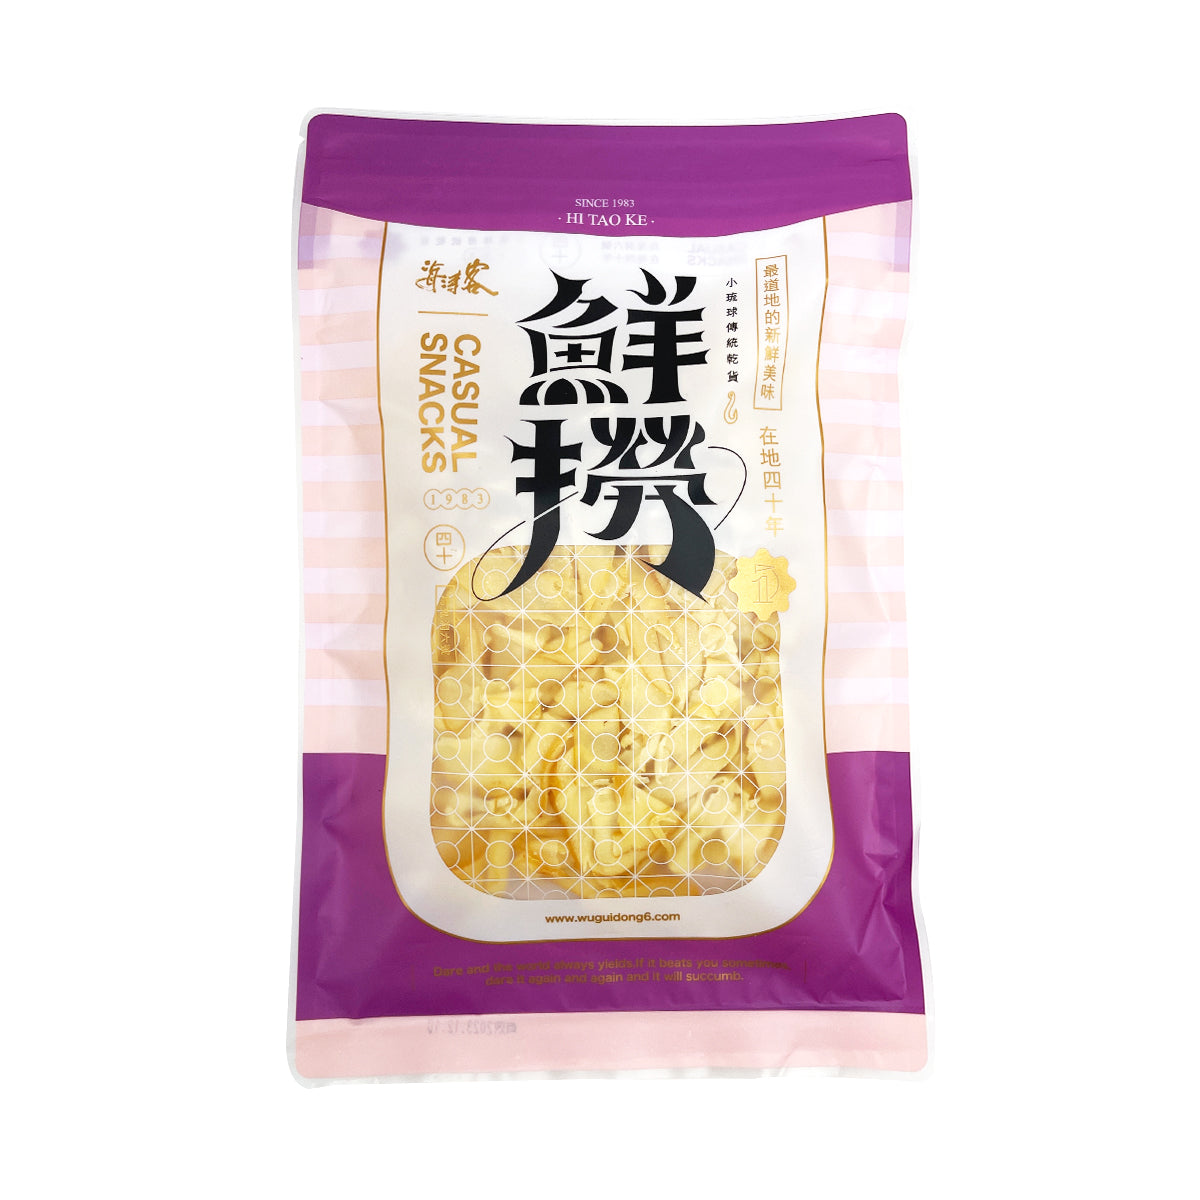 【HAITAOKE】 Dried Shredded Squid (Takoyaki Flavor) 160g